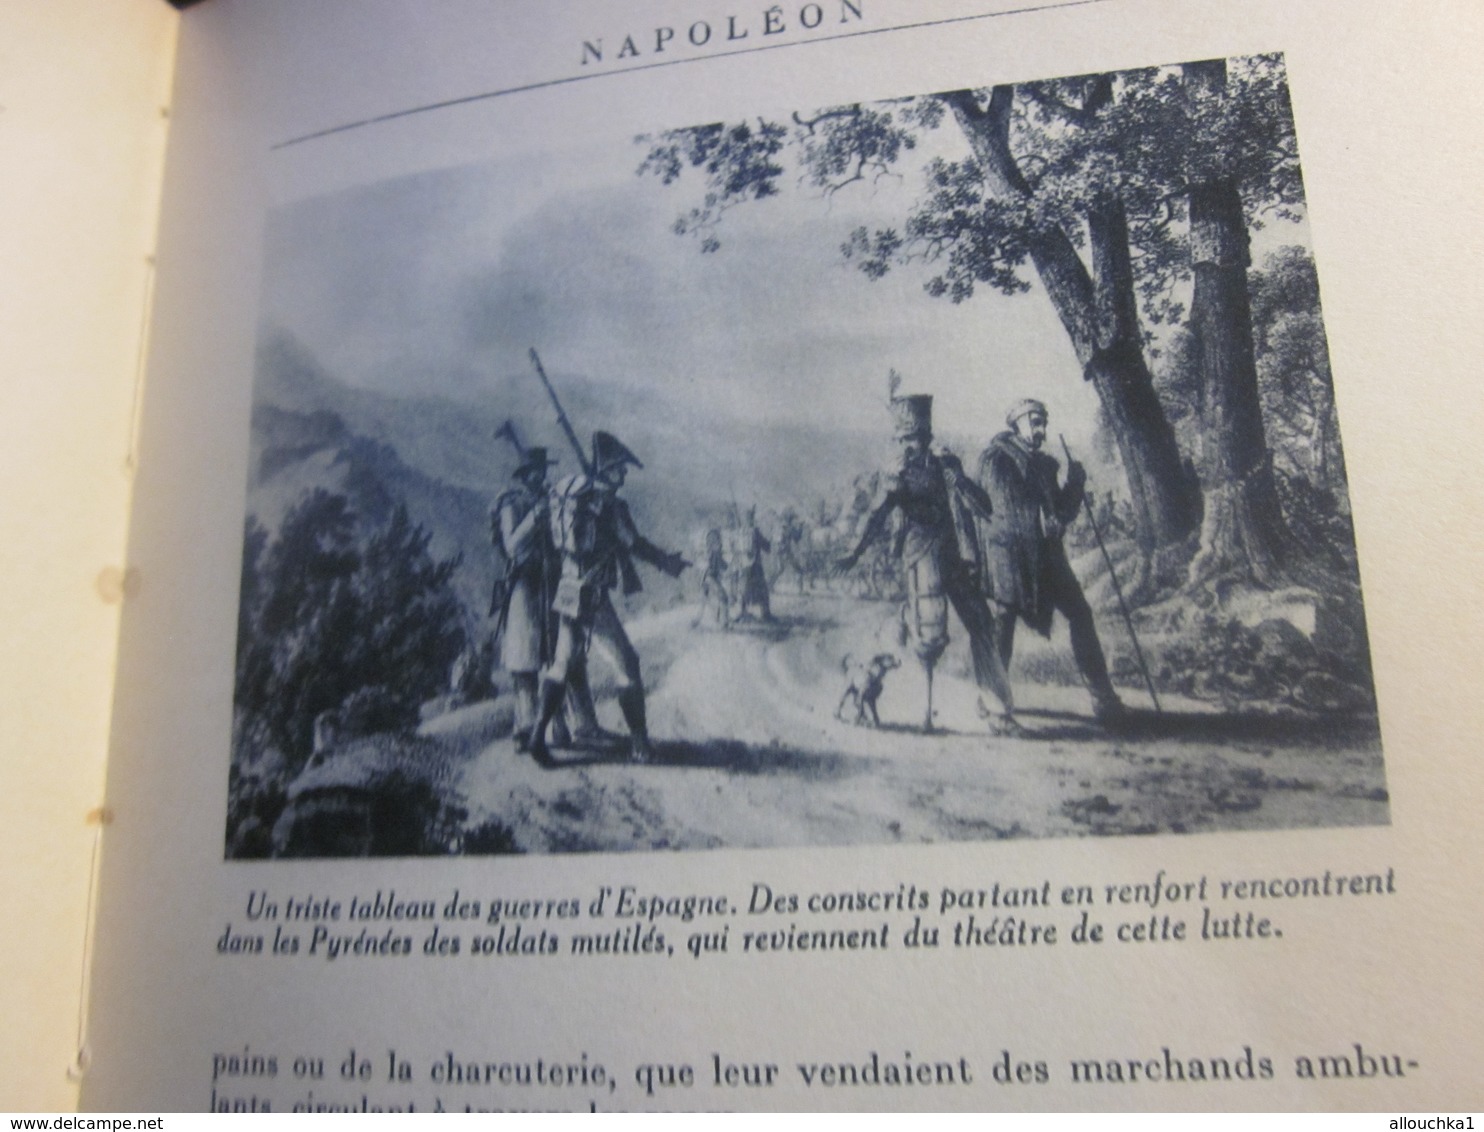 1947 NAPOLEON de PIERRE CLUZEL-ED FERNAND NATHAN OUVRAGE ORNÉ 149 PHOTOGRAPHIES LIRE AVANT PROPOS & TABLE MATIÈRES 160 P